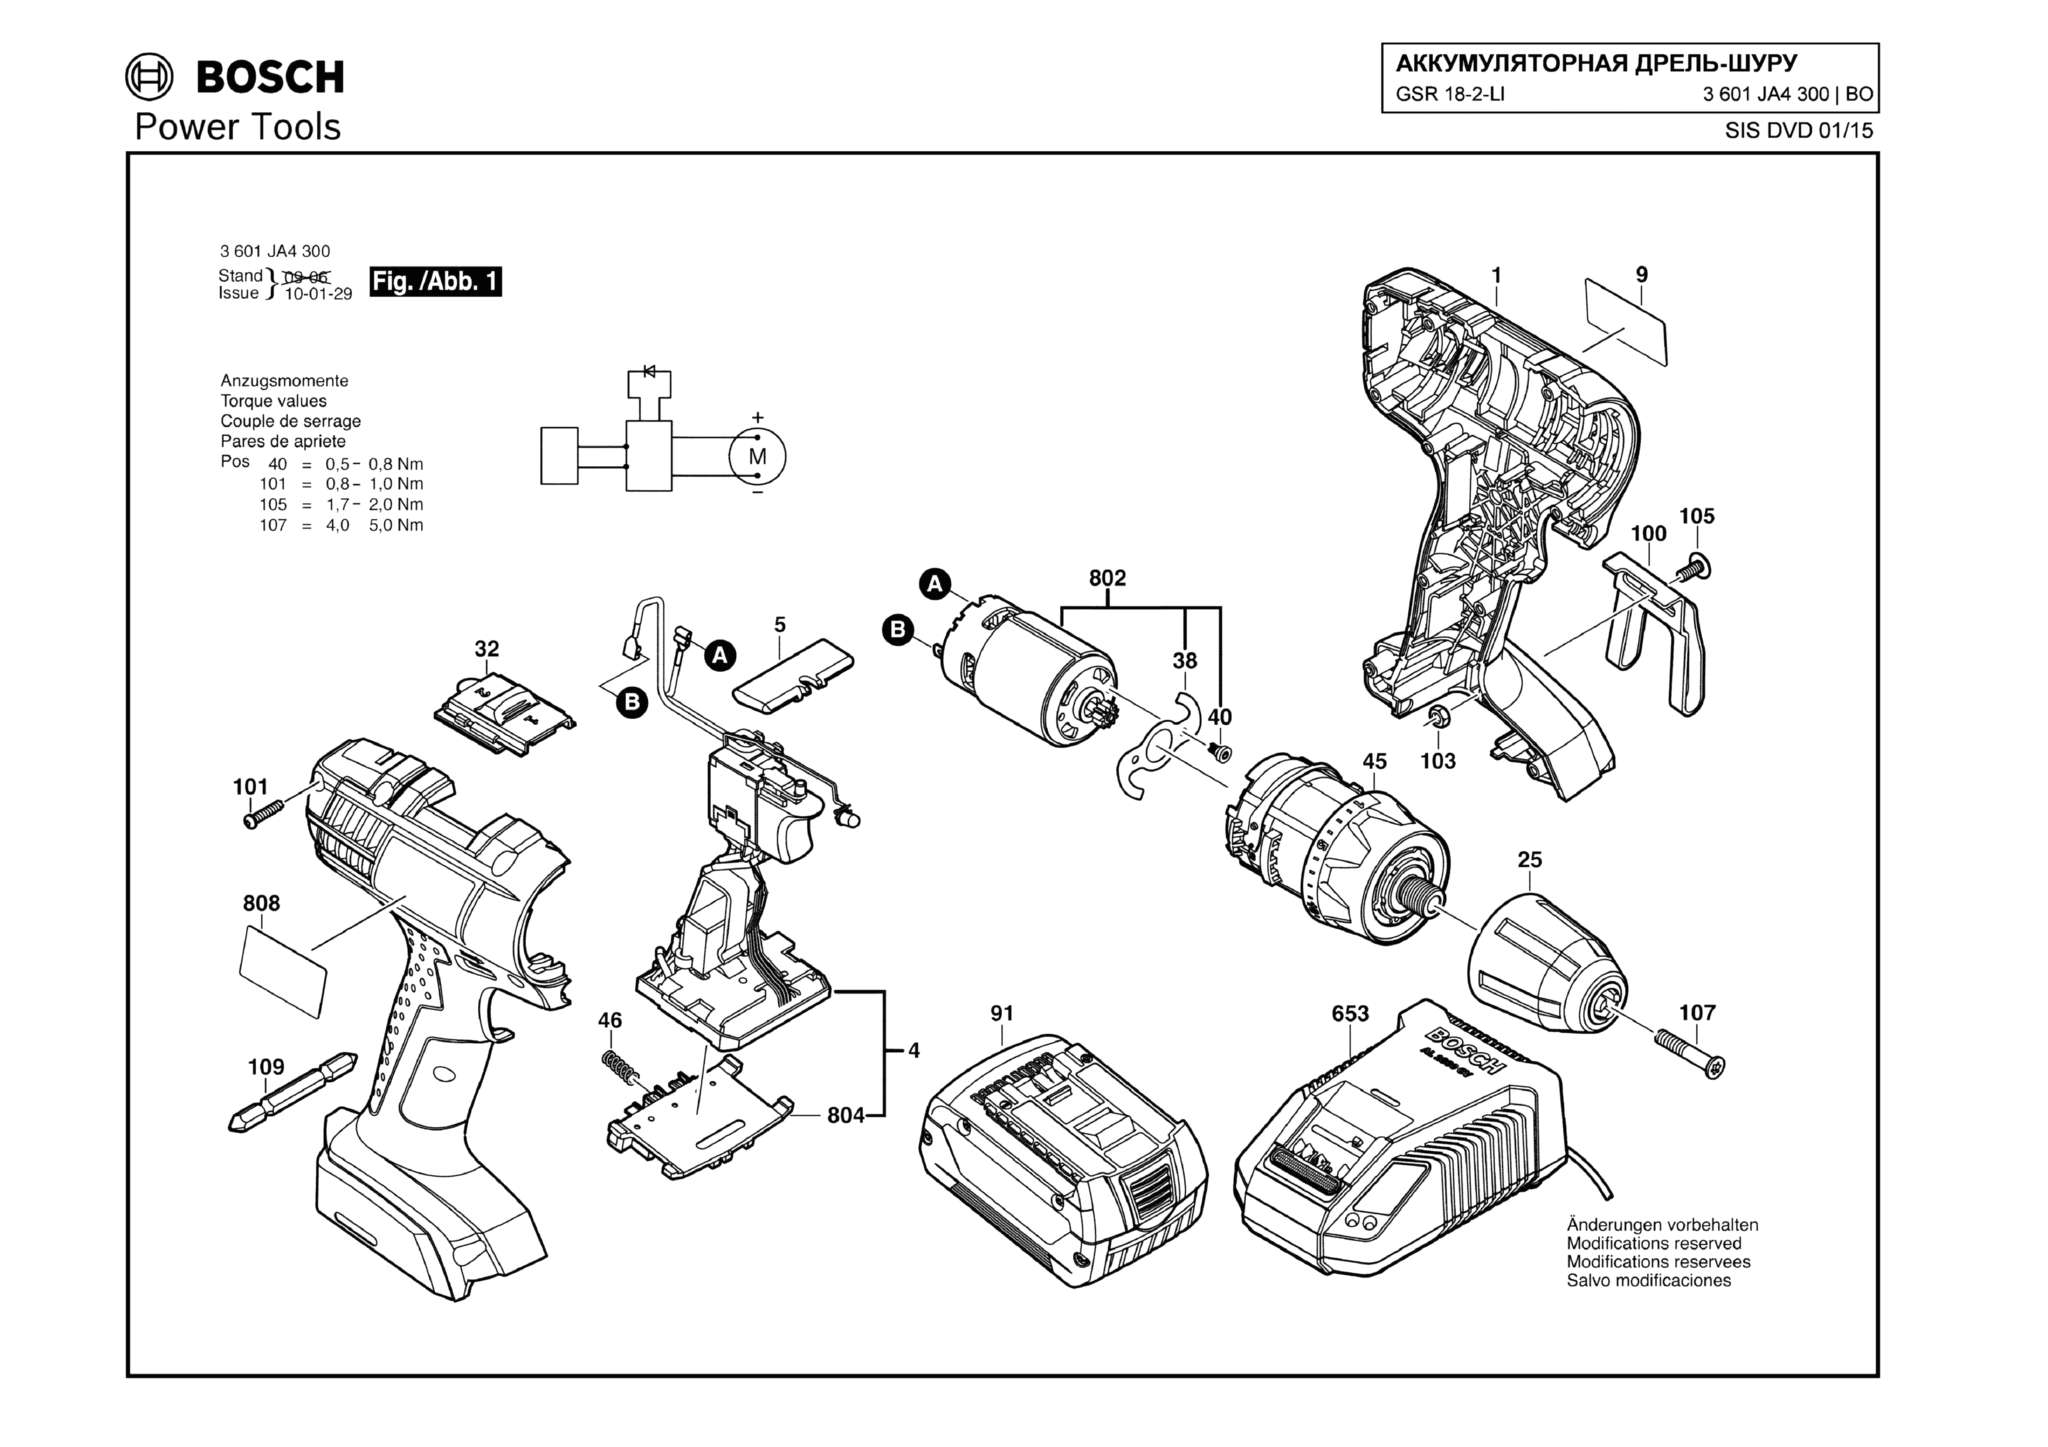 Запчасти, схема и деталировка Bosch GSR 18-2-LI (ТИП 3601JA4300)